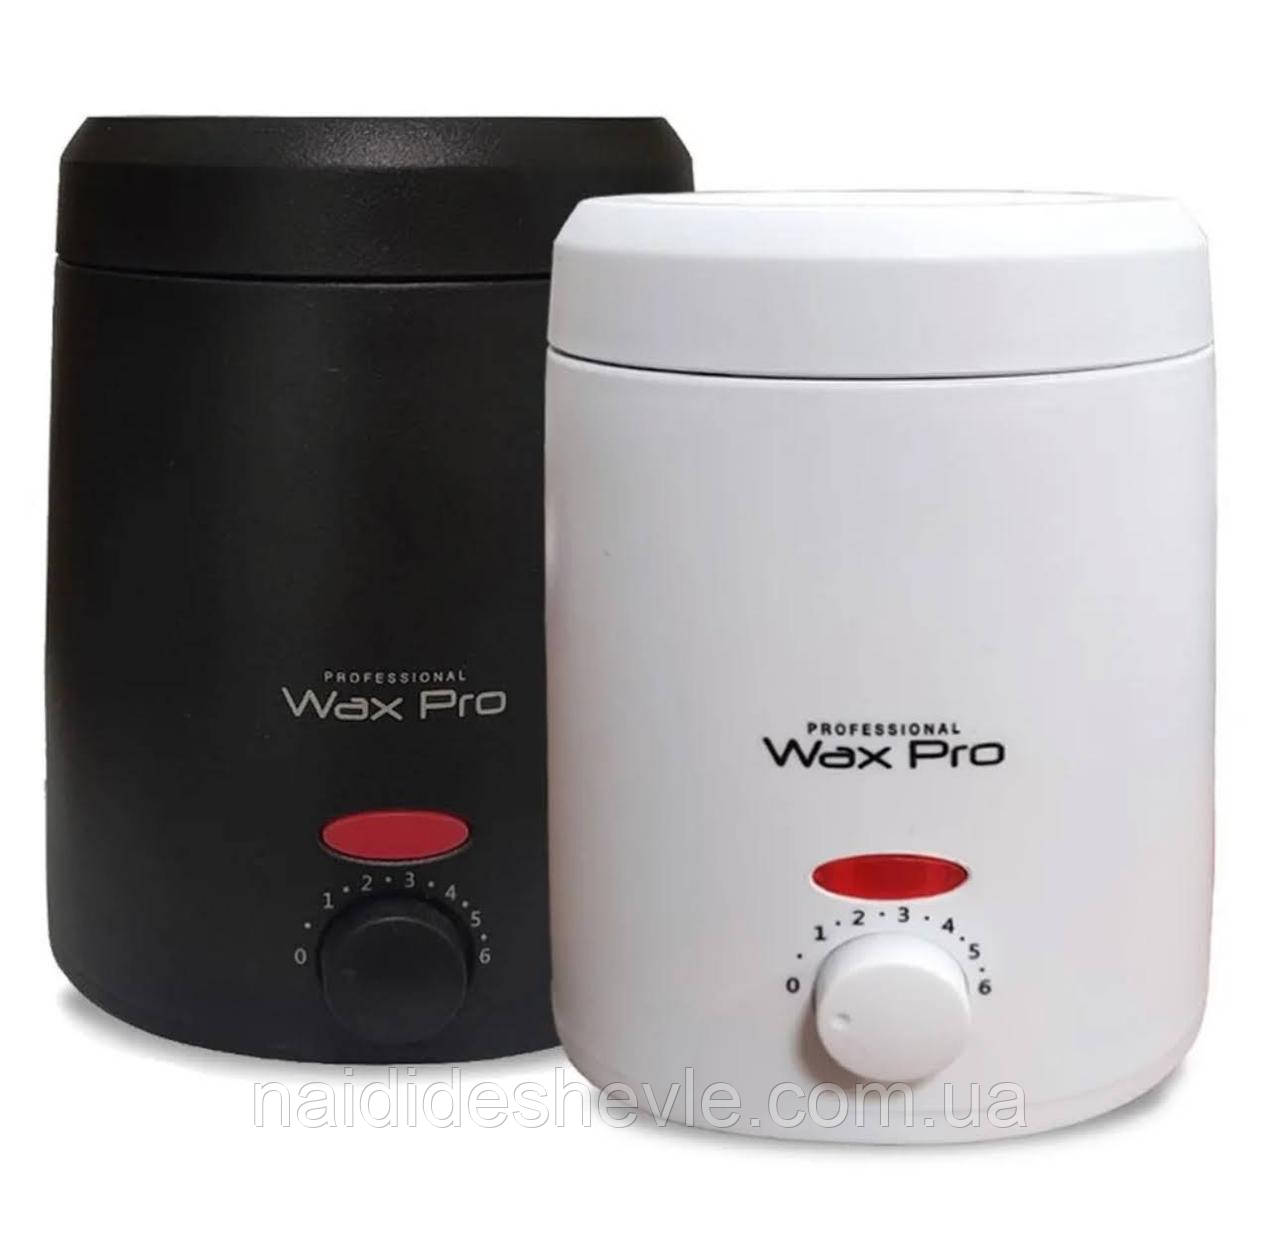 Баночний воскоплав Wax Pro-200 на 35 Вт. (200 мл.) з керамічною чашею та регулятором - для депіляції